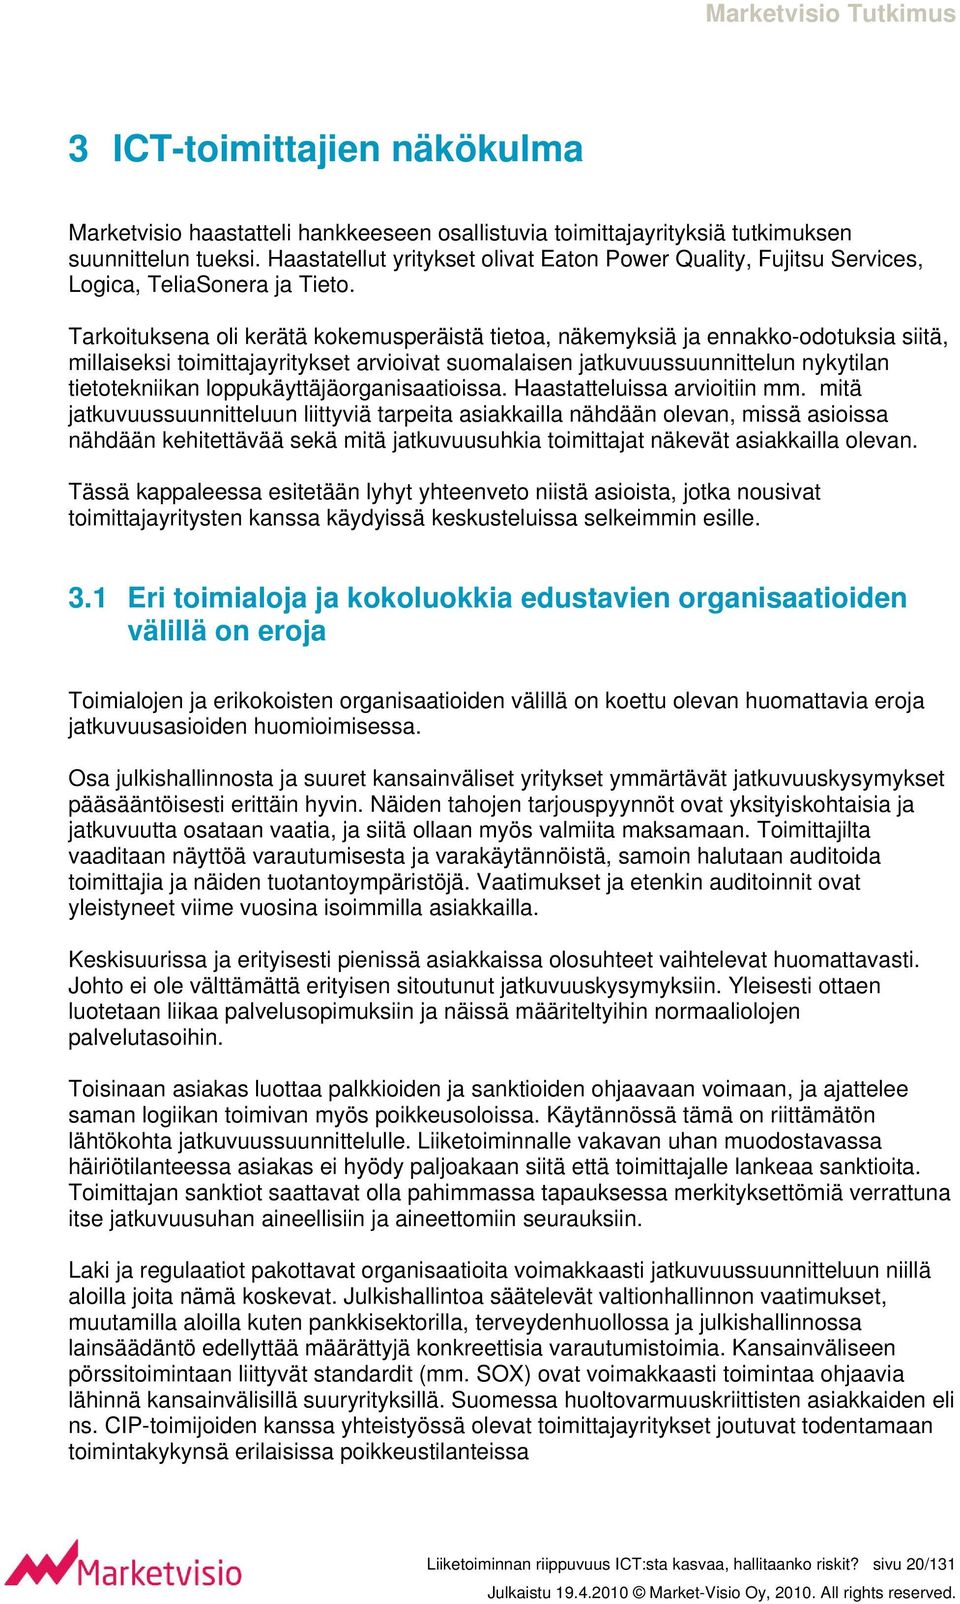 Tarkoituksena oli kerätä kokemusperäistä tietoa, näkemyksiä ja ennakko-odotuksia siitä, millaiseksi toimittajayritykset arvioivat suomalaisen jatkuvuussuunnittelun nykytilan tietotekniikan